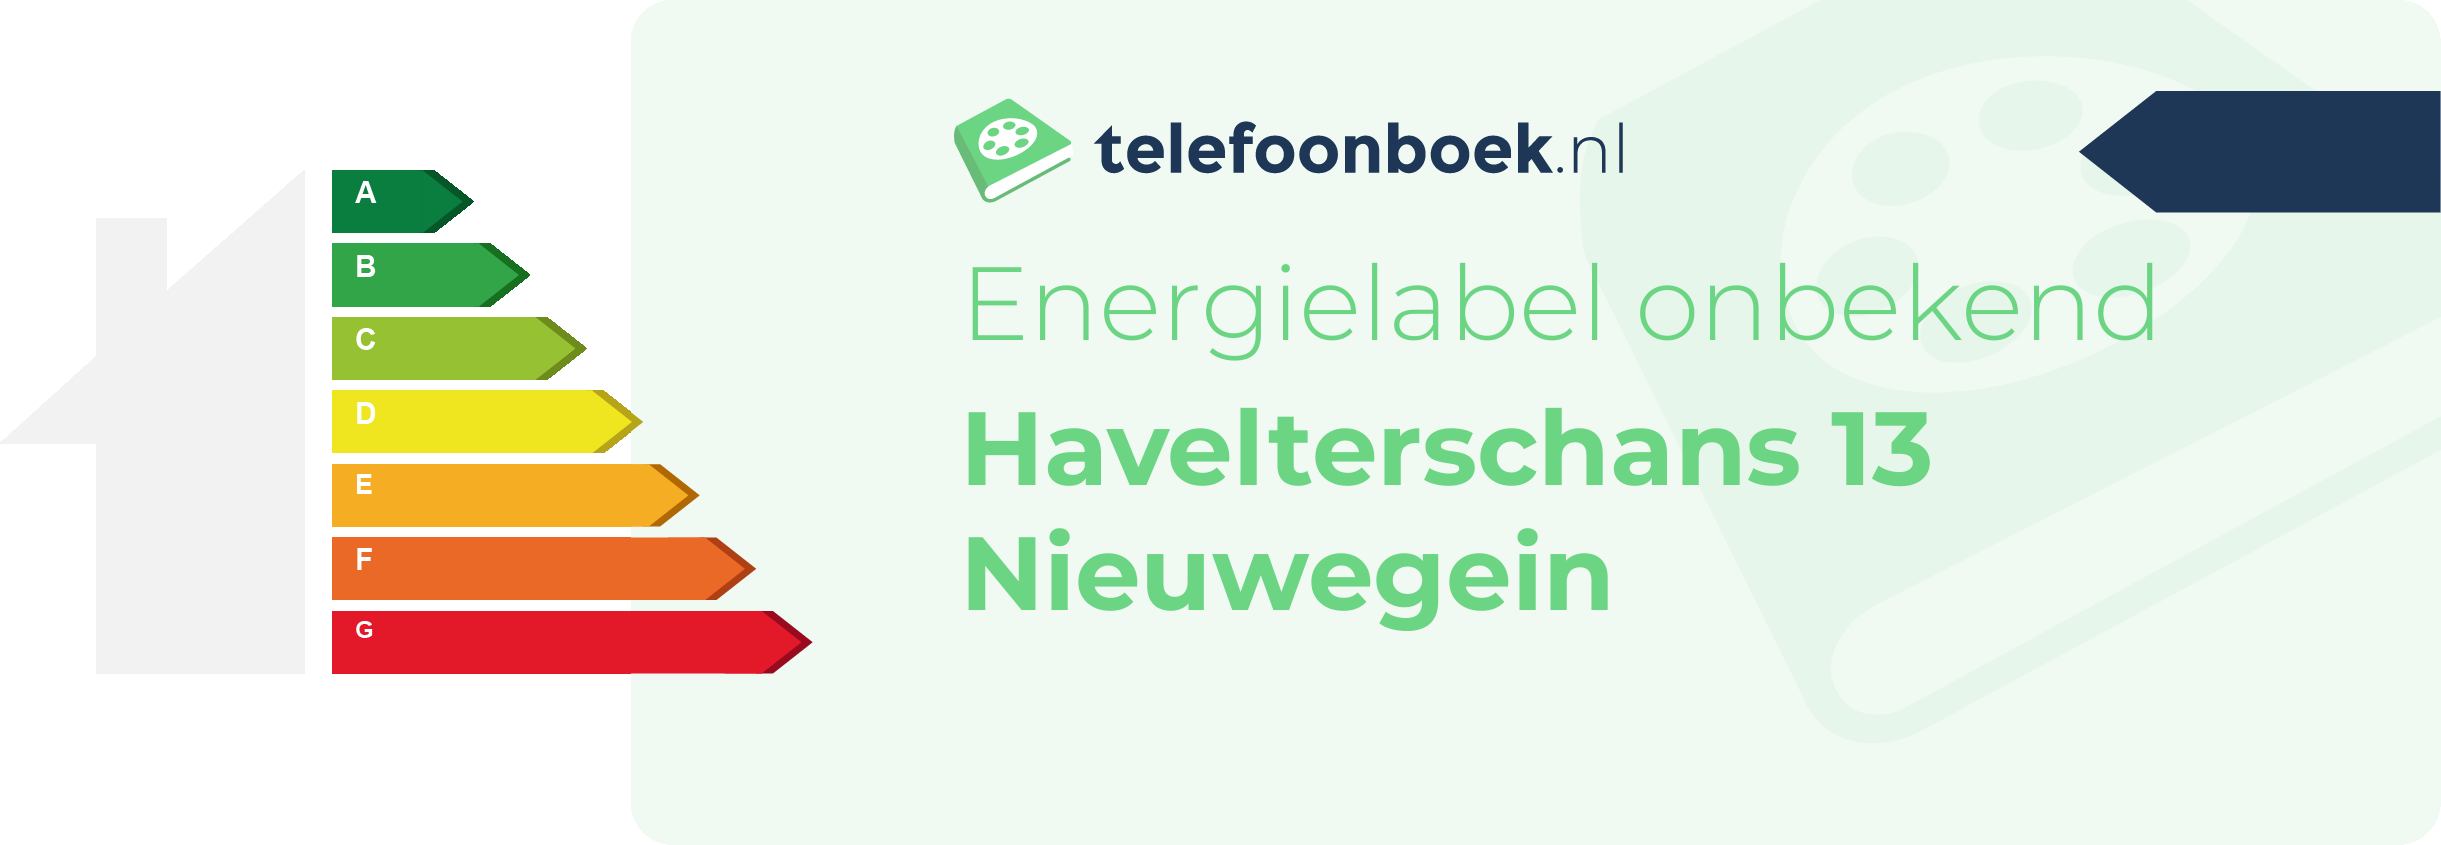 Energielabel Havelterschans 13 Nieuwegein